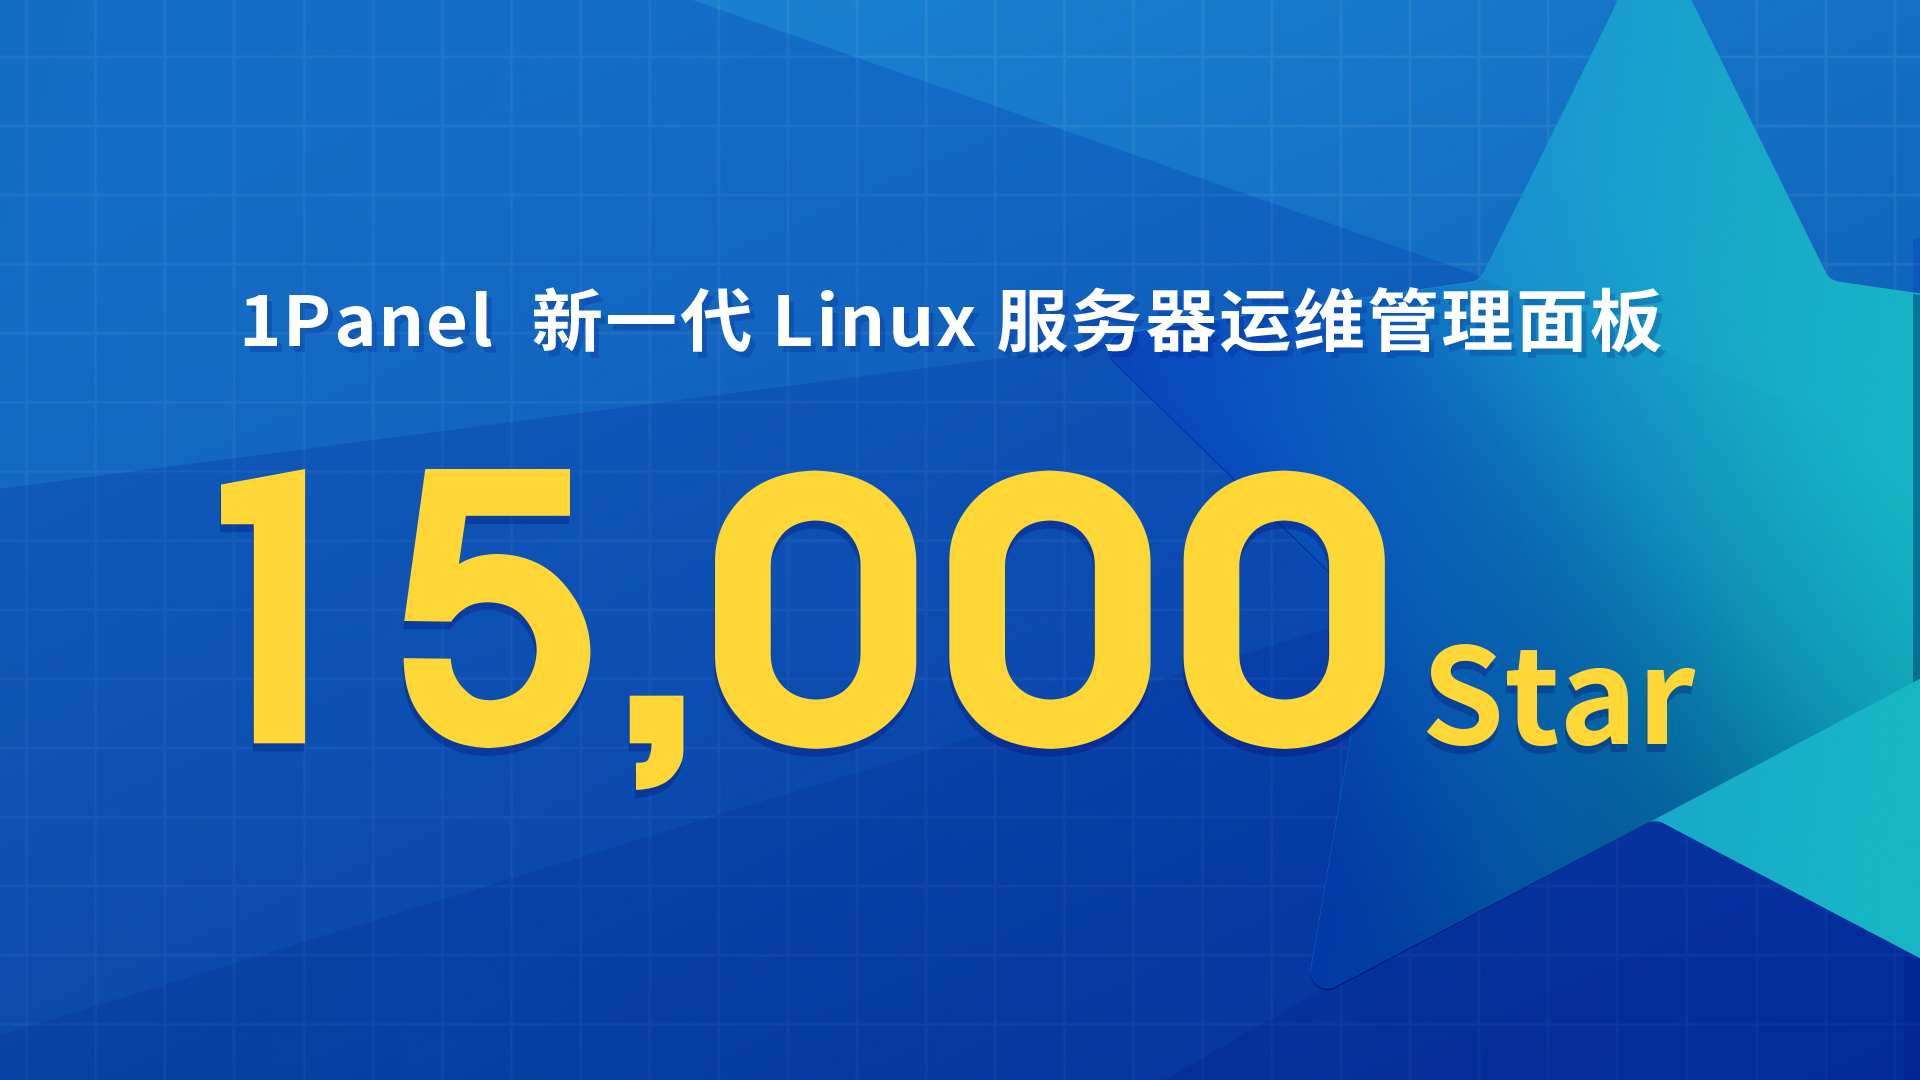 1Panel开源面板项目GitHub Star数量突破15,000！